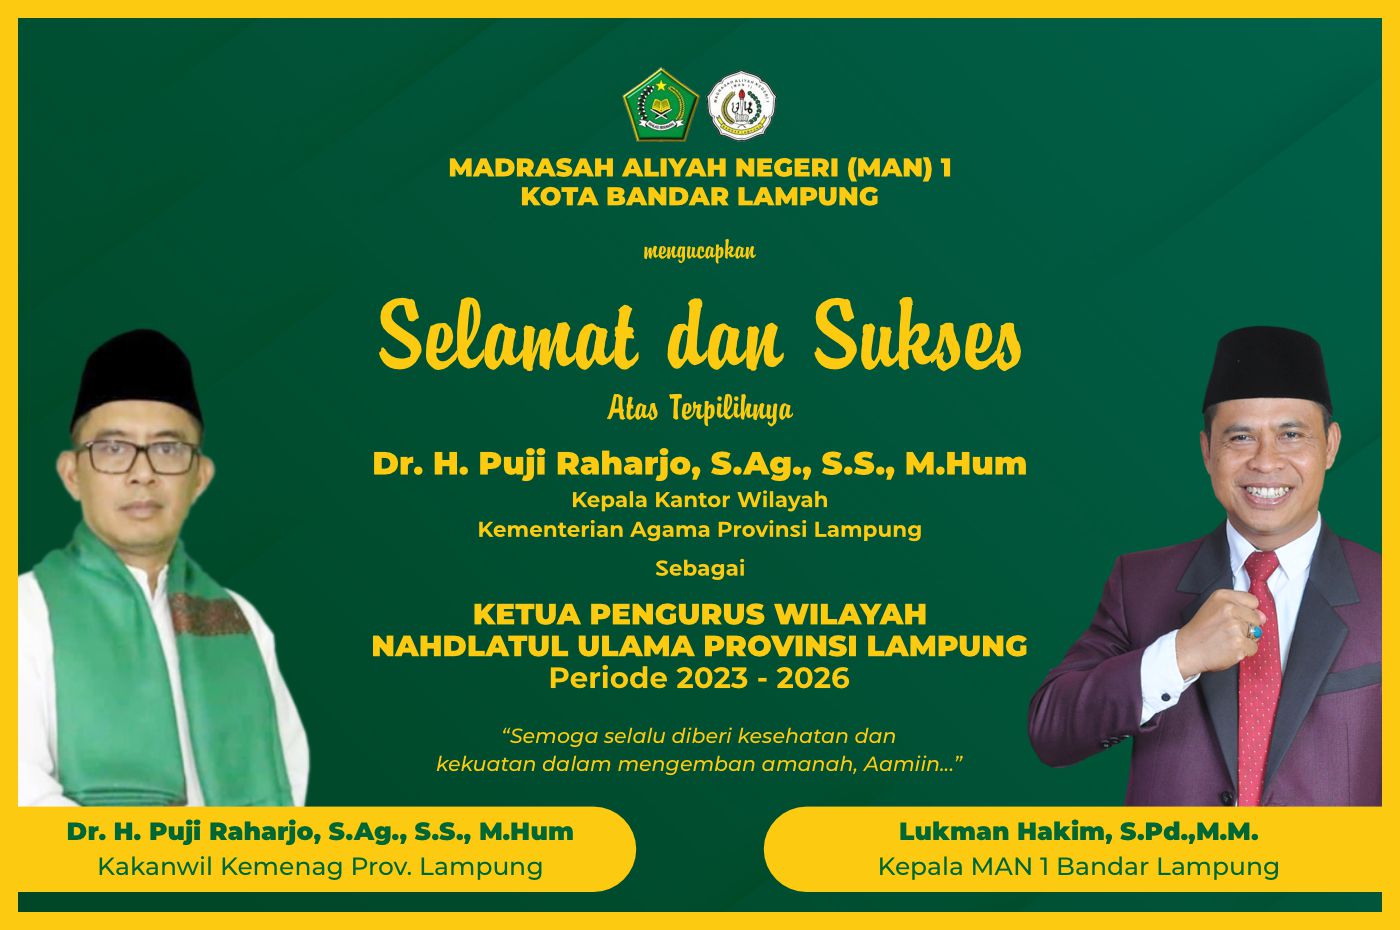 Selamat Atas Terpilihnya Dr H Puji Raharjo Sebagai Ketua Pengurus Wilayah Nahdlatul Ulama Provinsi Lampung